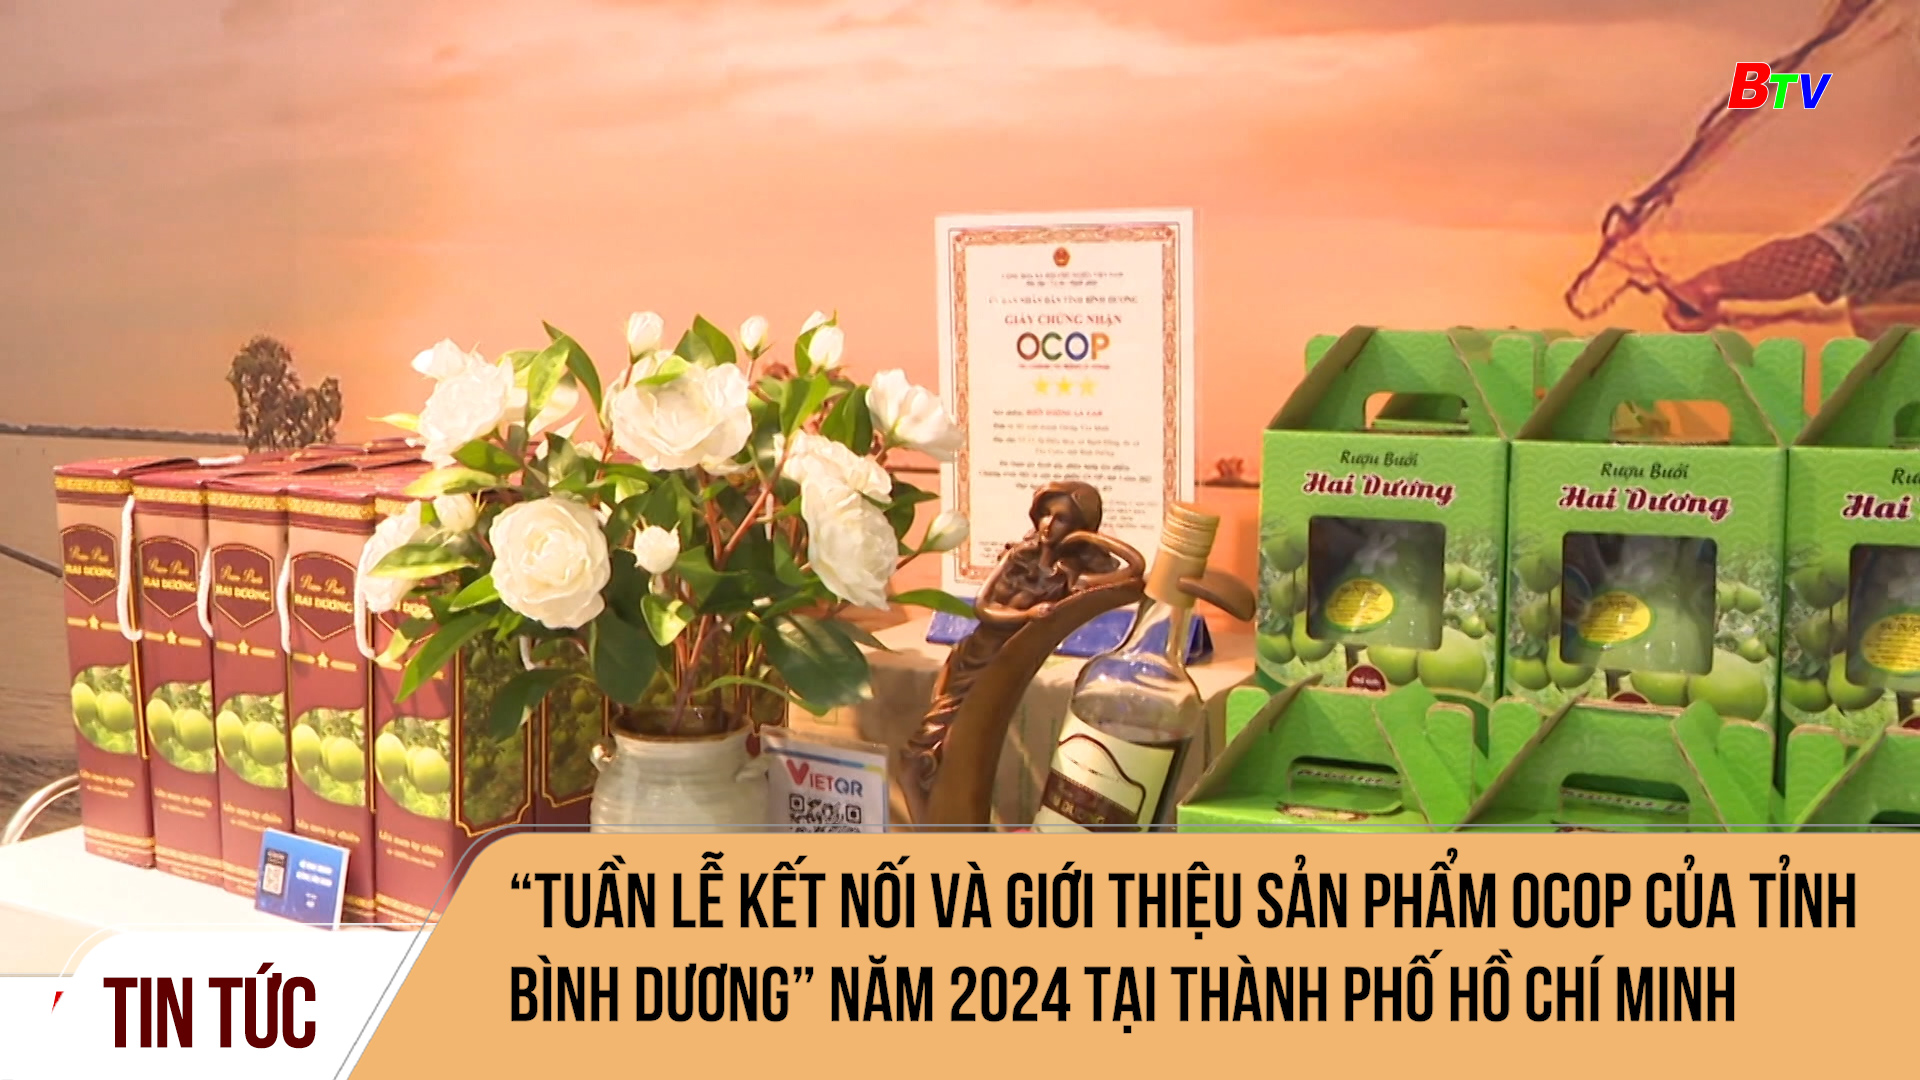 “Tuần lễ kết nối và giới thiệu sản phẩm OCOP của tỉnh Bình Dương” năm 2024 tại Thành phố Hồ Chí Minh